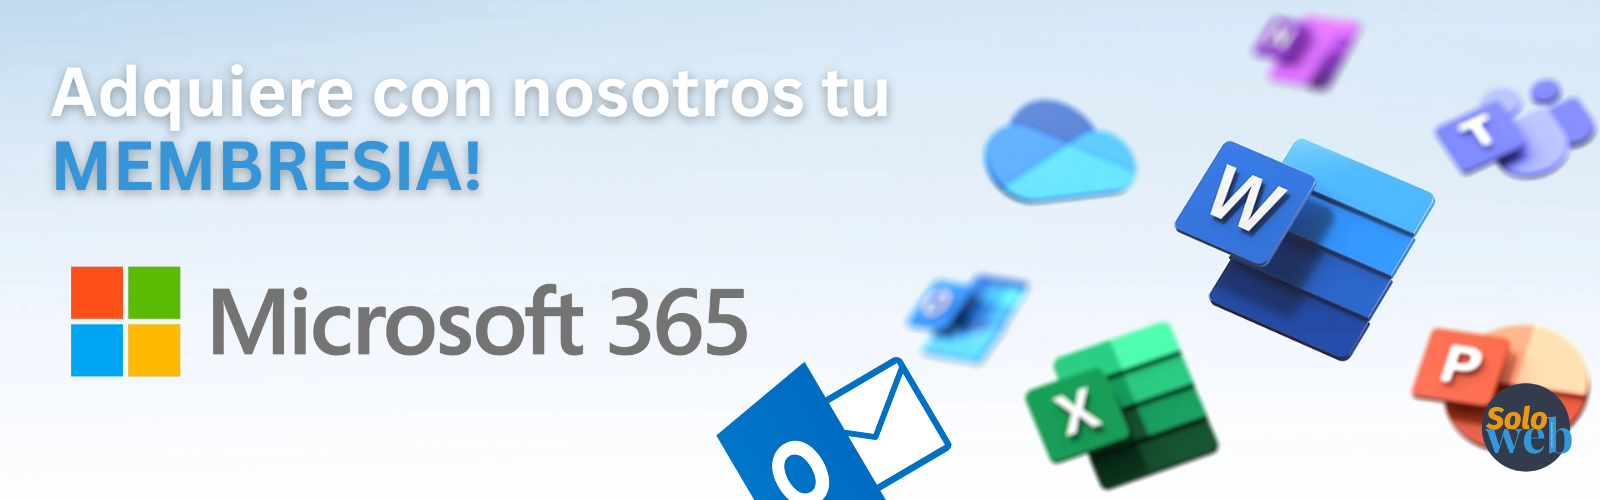 Office 365 para mac, pc, iOS y Android